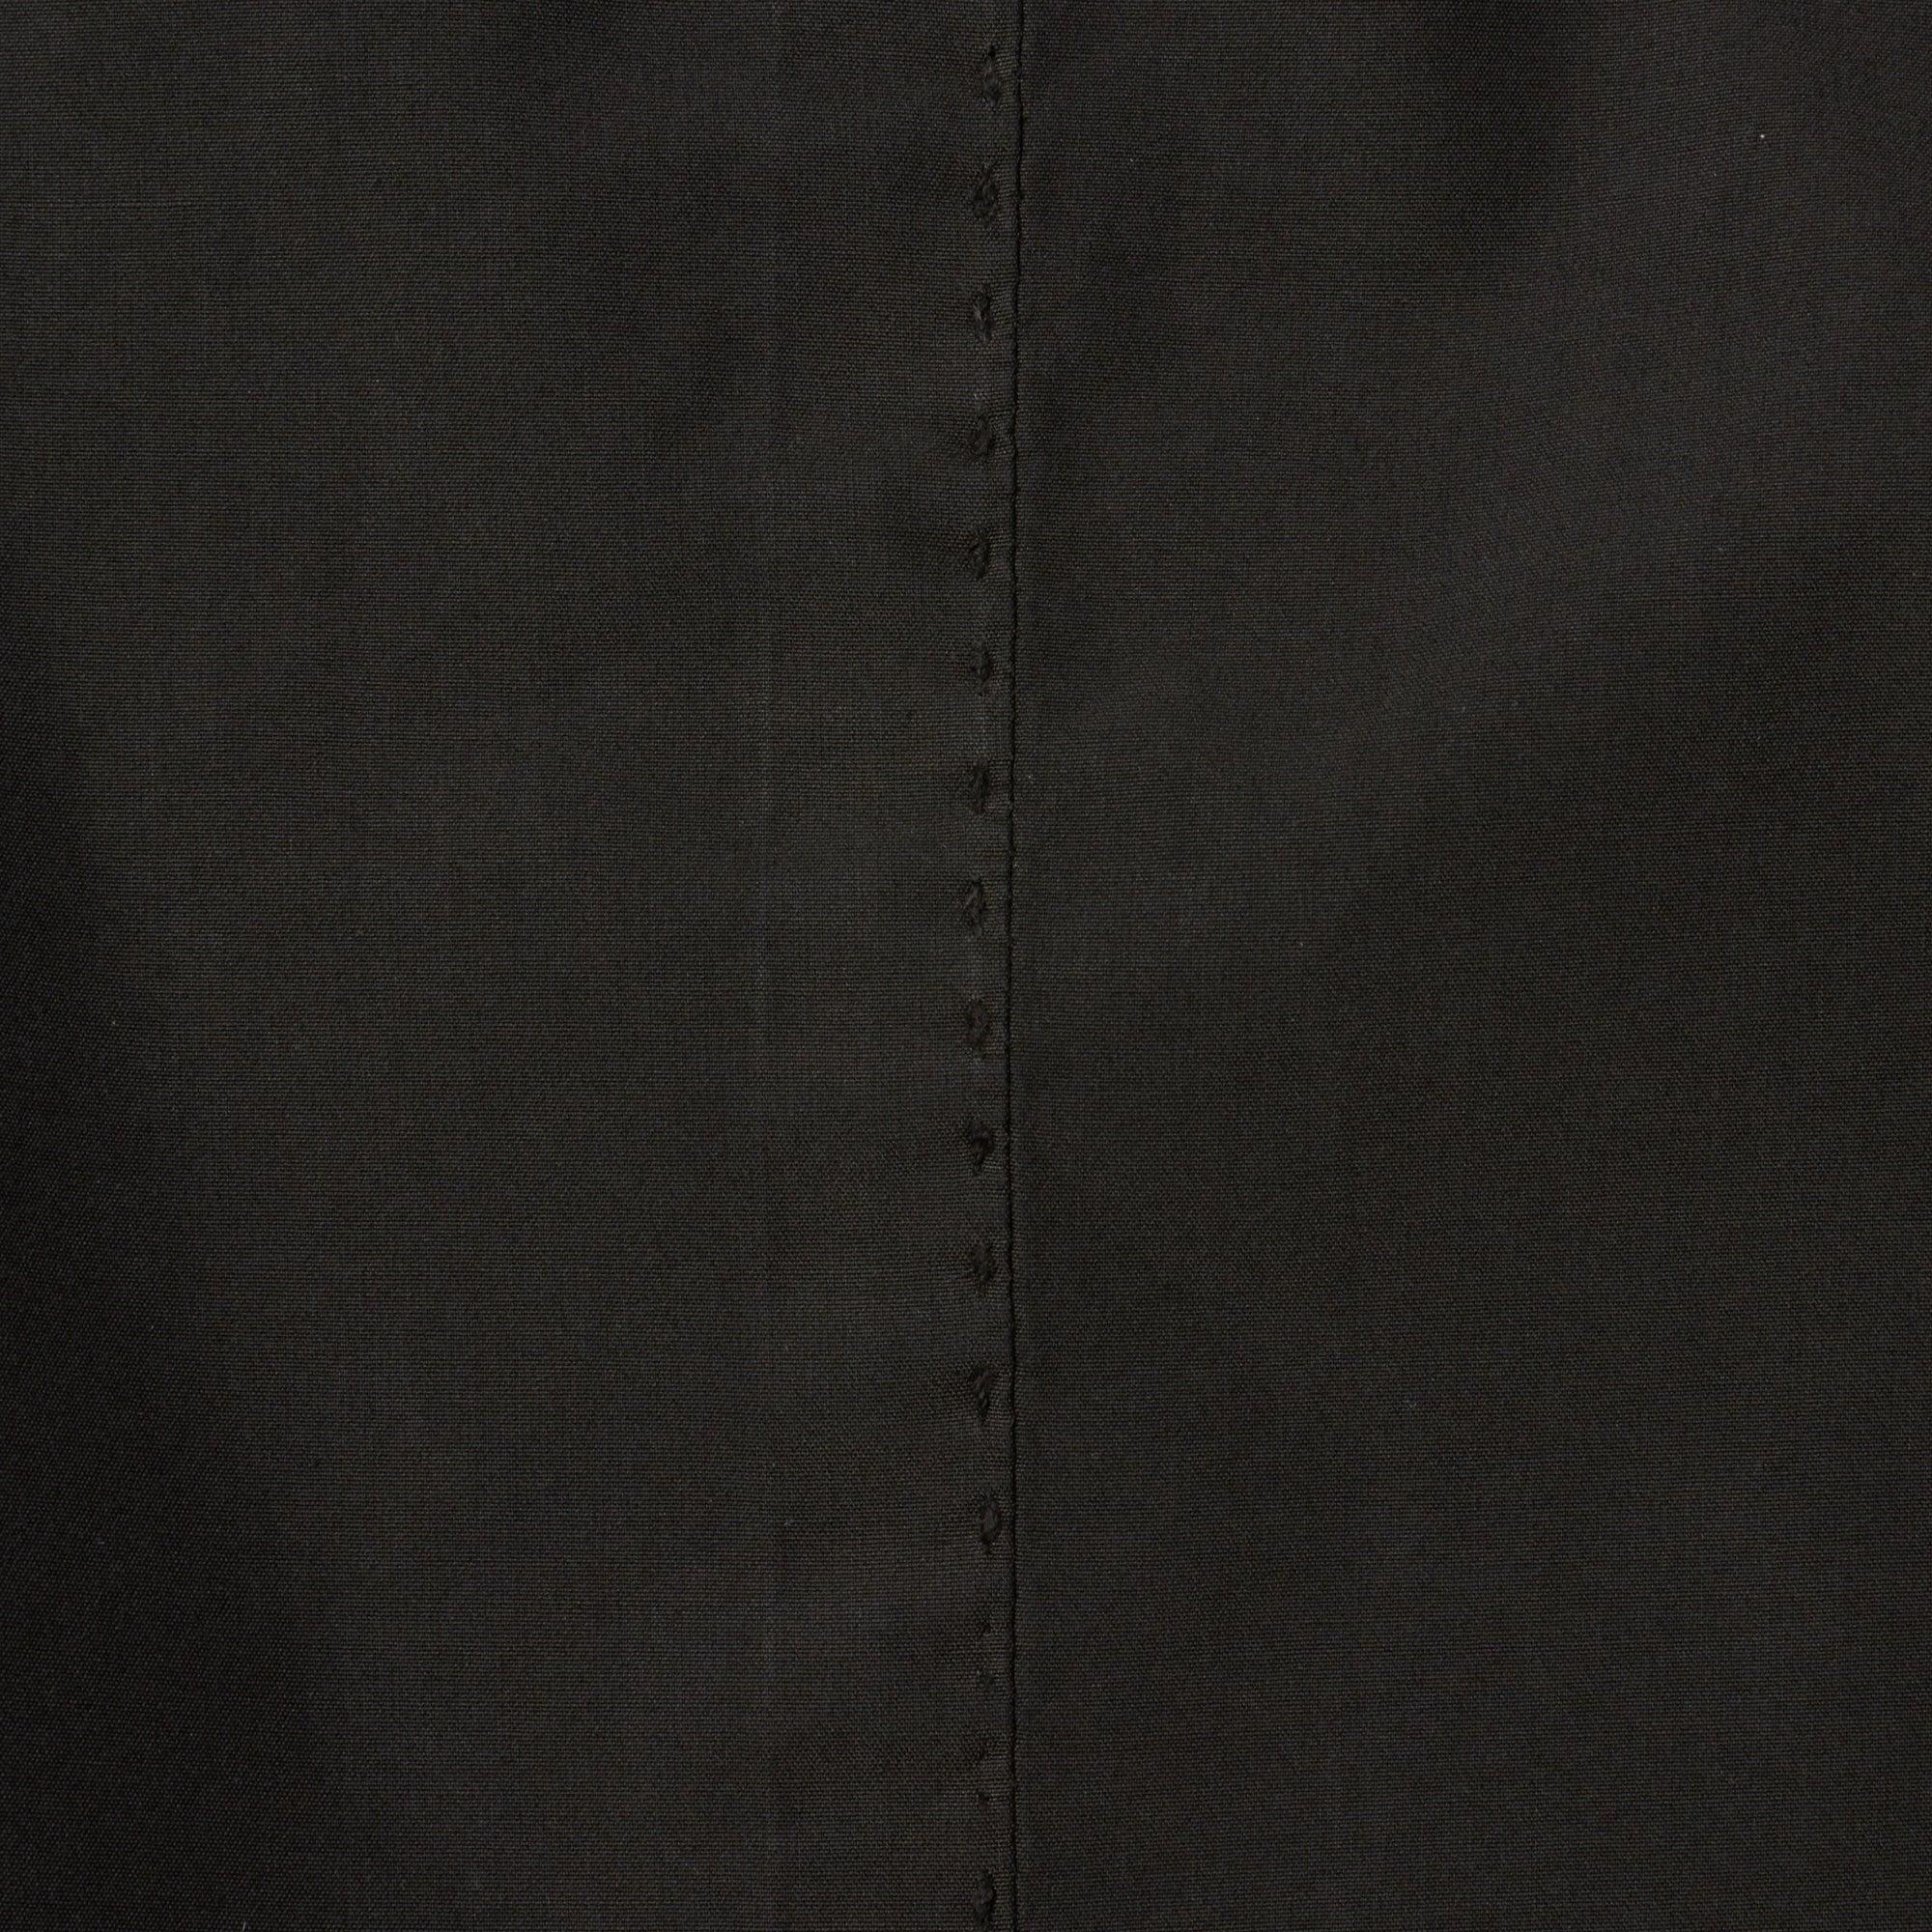 BOGLIOLI Milano "K.Jacket" Black Garment Dyed Cotton Unlined Jacket NEW